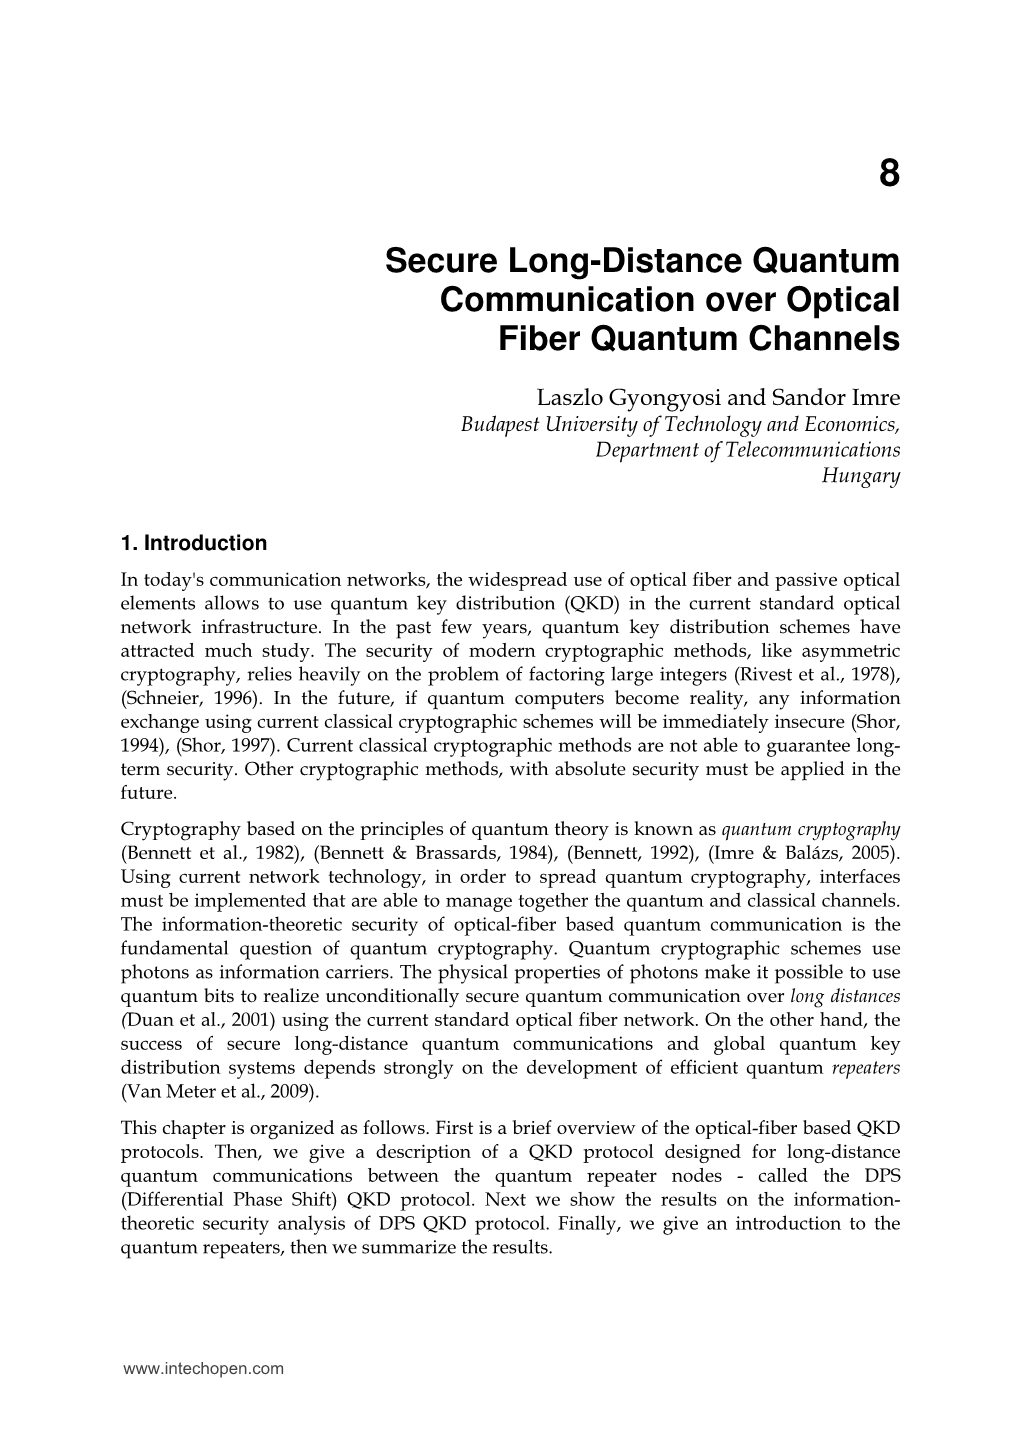 Secure Long-Distance Quantum Communication Over Optical Fiber Quantum Channels